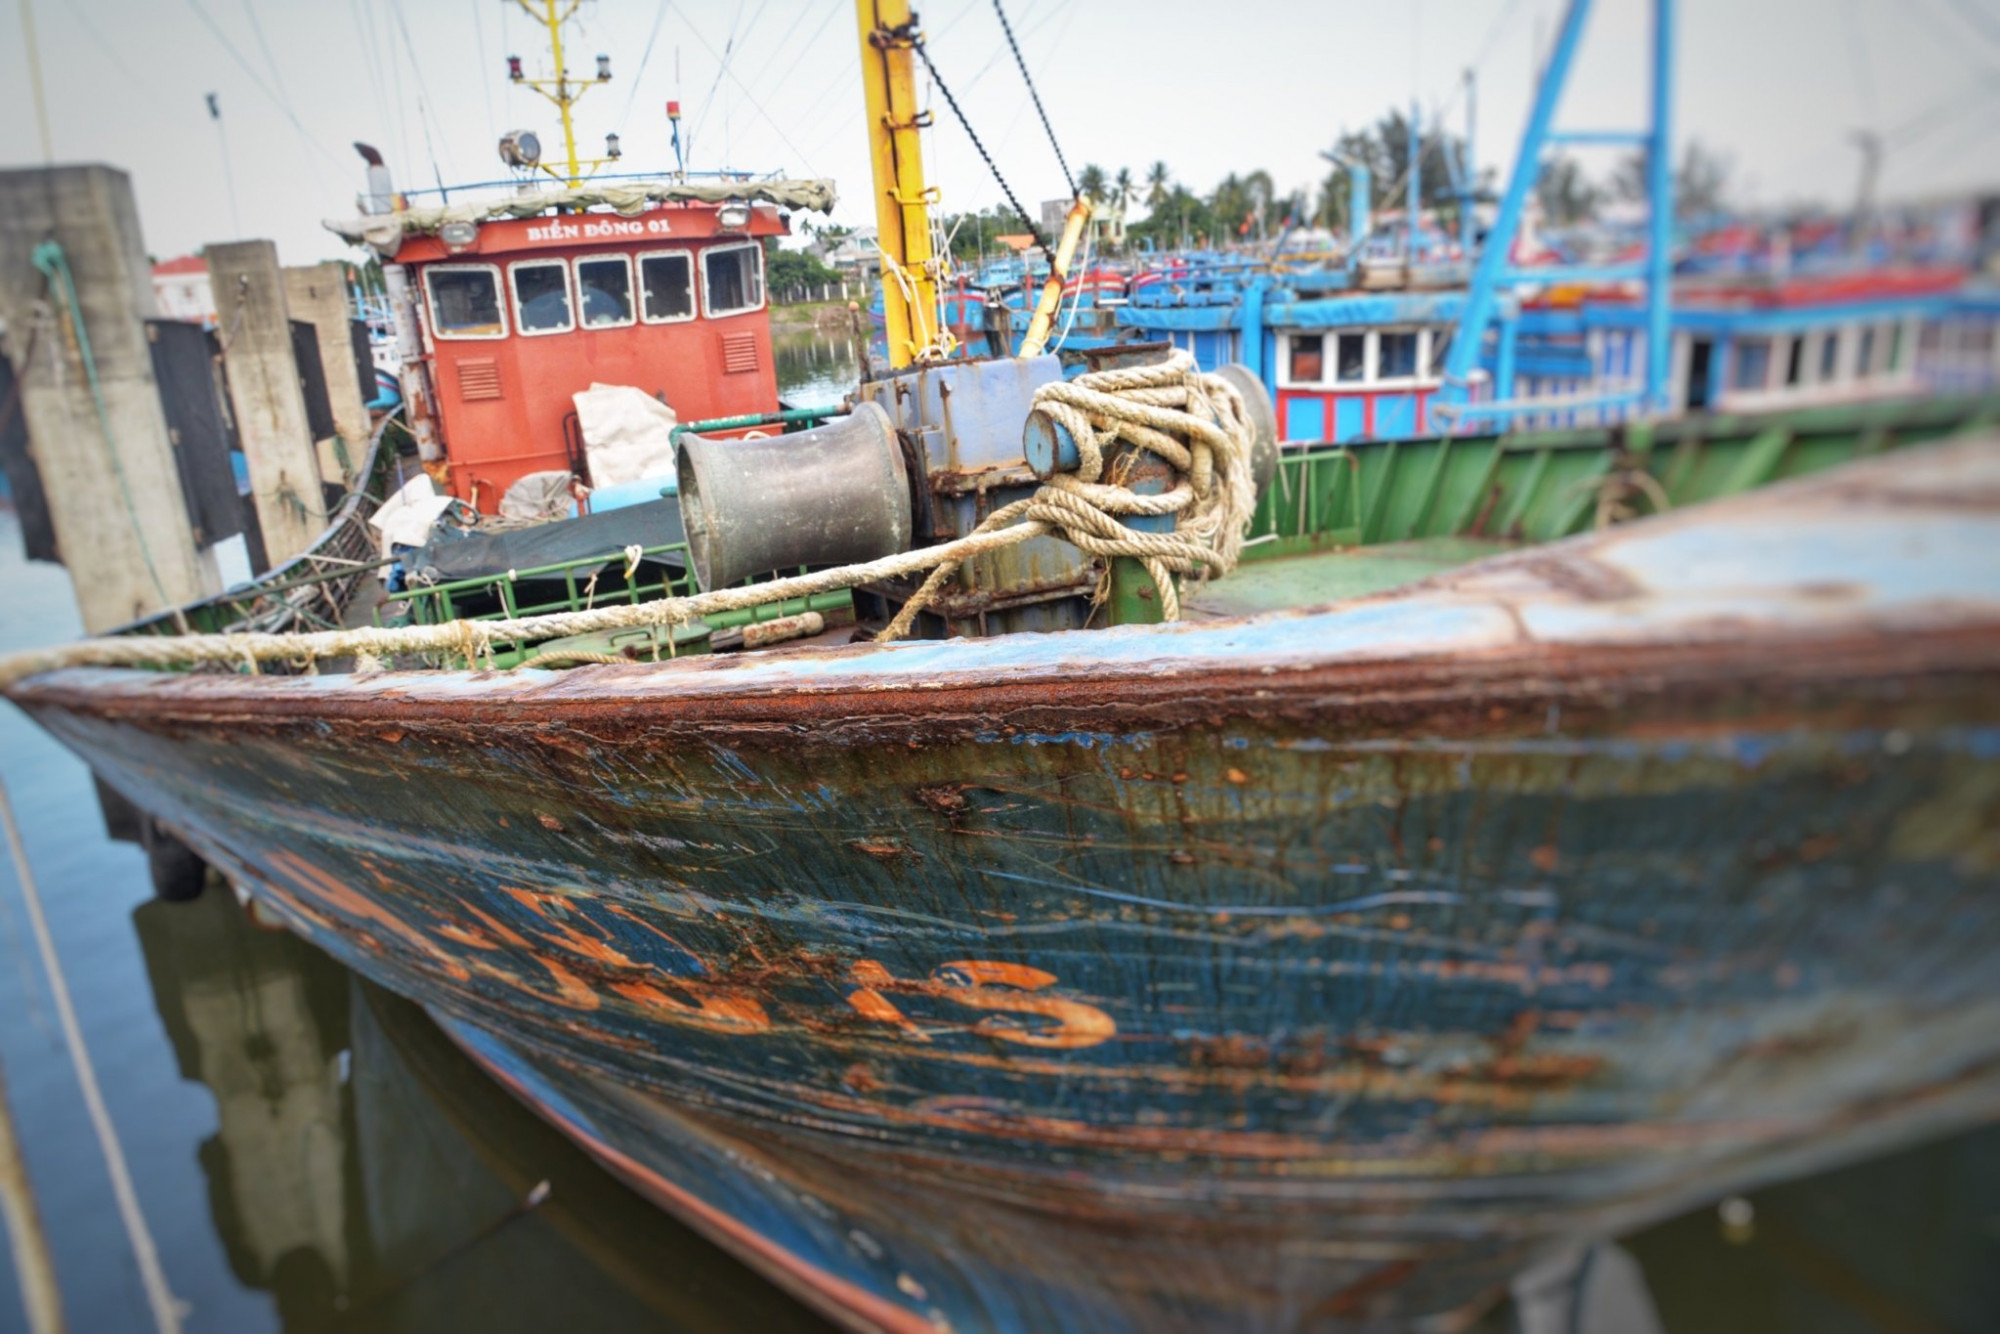 Chiếc tàu vỏ thép của ngư dân Võ Văn Hân neo bờ, bị đưa ra đấu giá nhưng chưa ai đăng ký mua